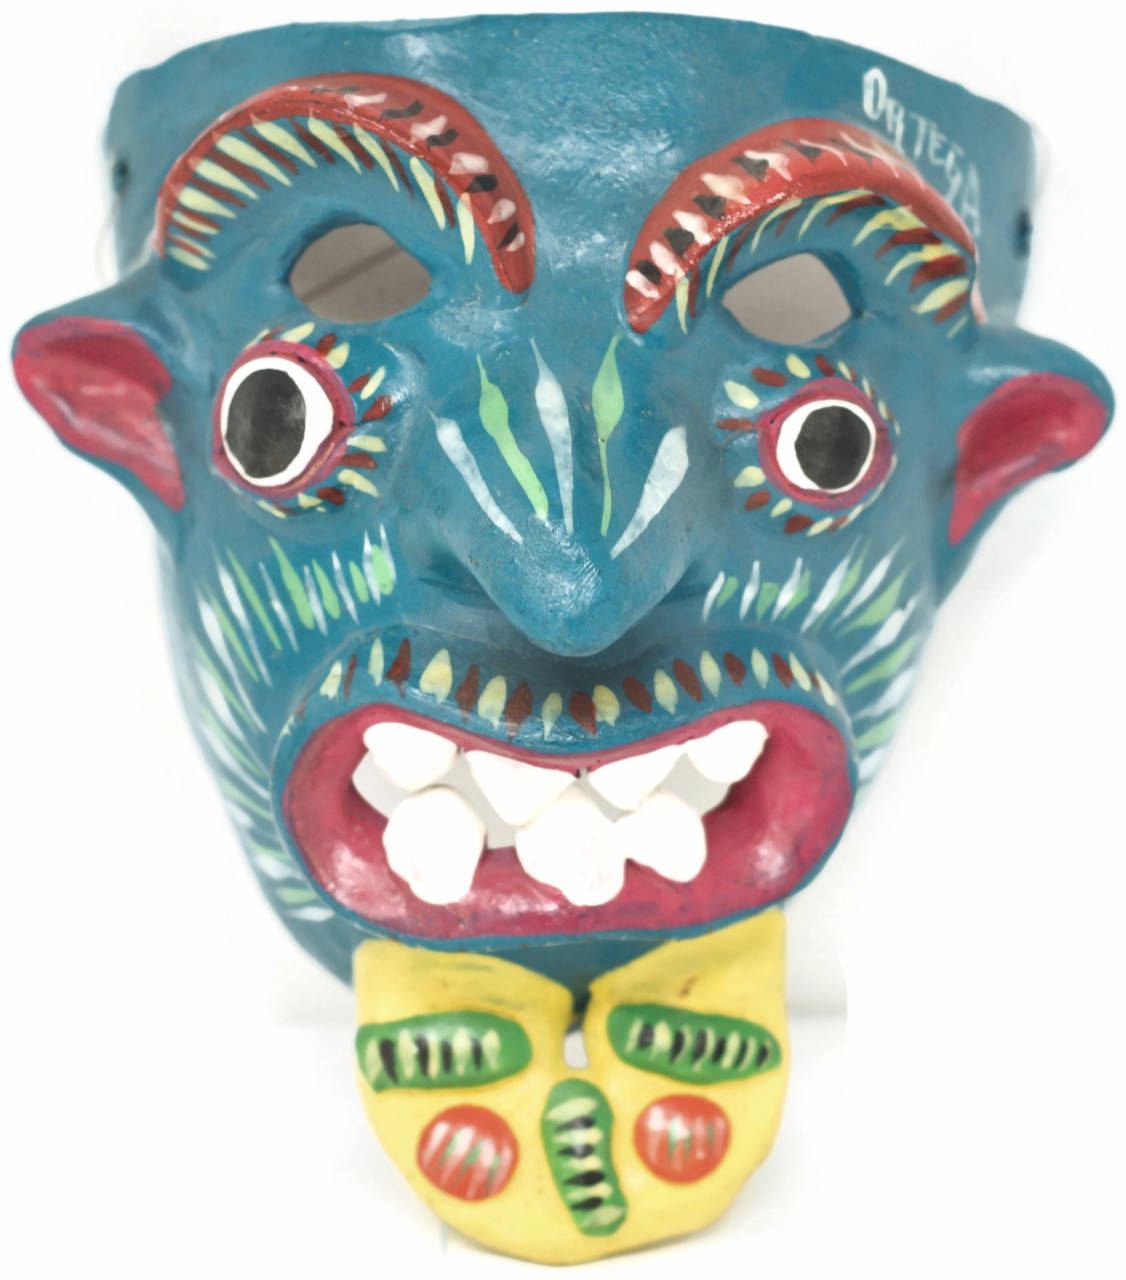 Hand Sculpted Clay Mask by Folk Artist Gerardo Ortega, 5.5" x 7" x 4" Ortega  107